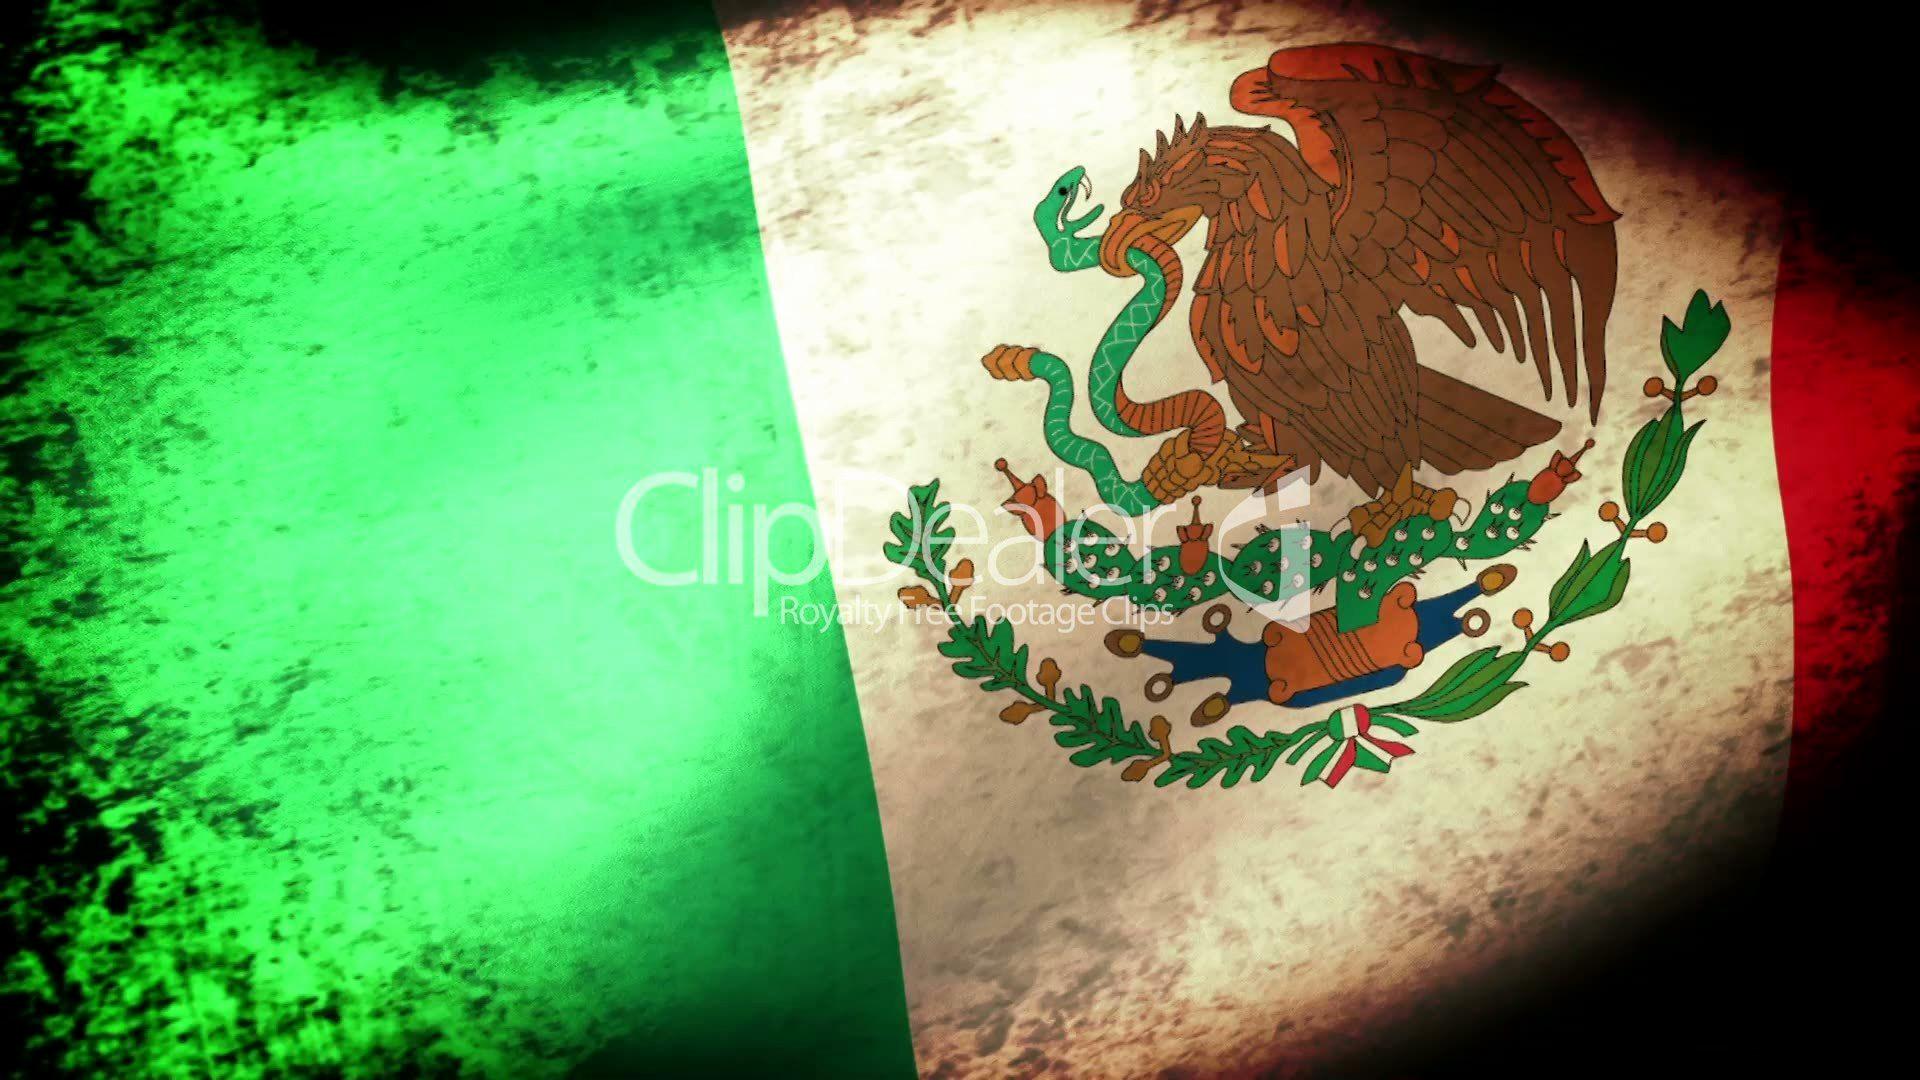 Mexico Flag Wallpaper